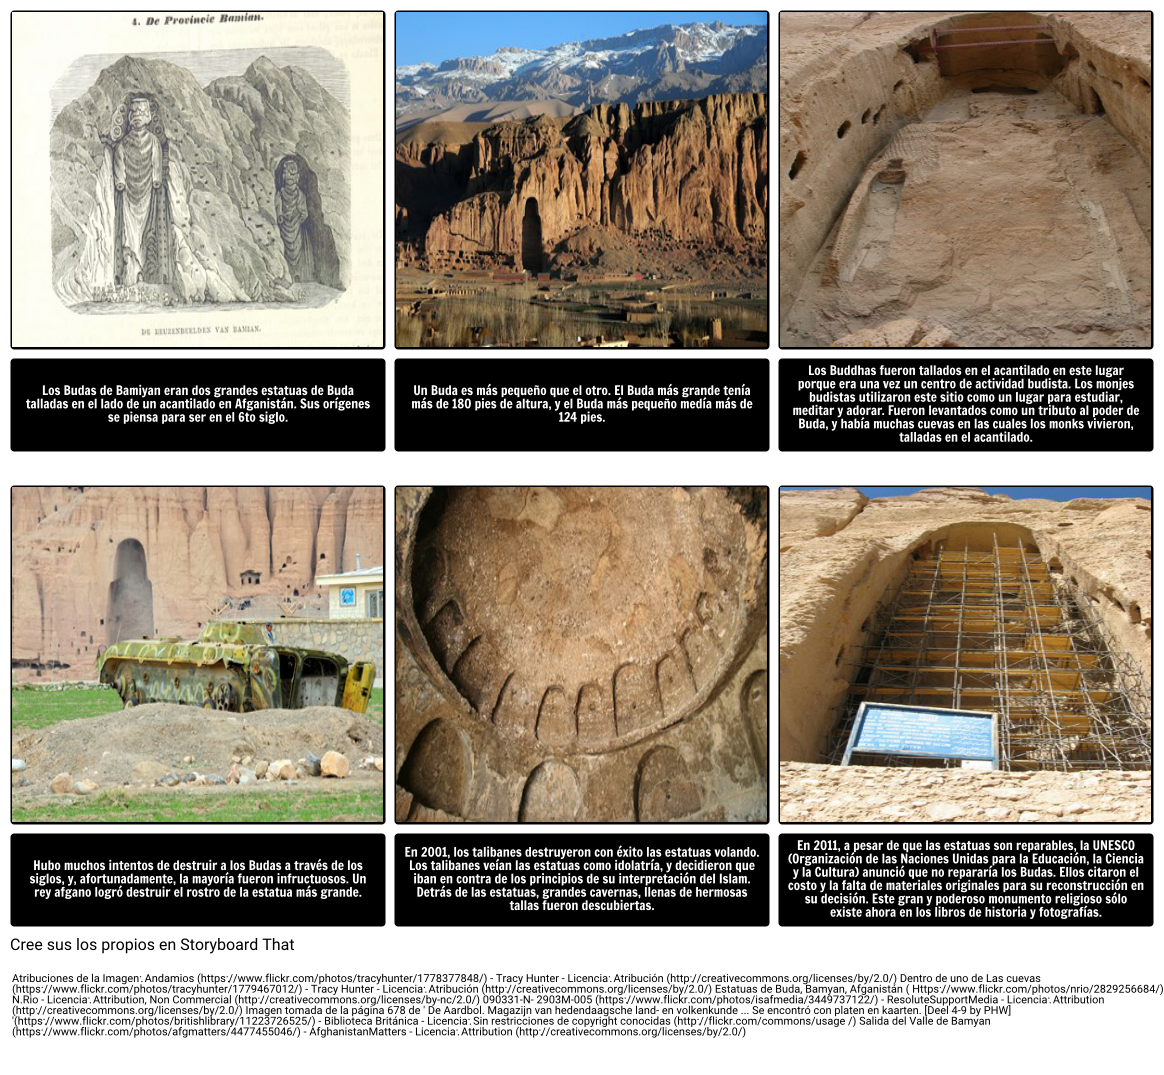 Conexión con el tema de "Ozymandias": Los Budas de Bamiyan